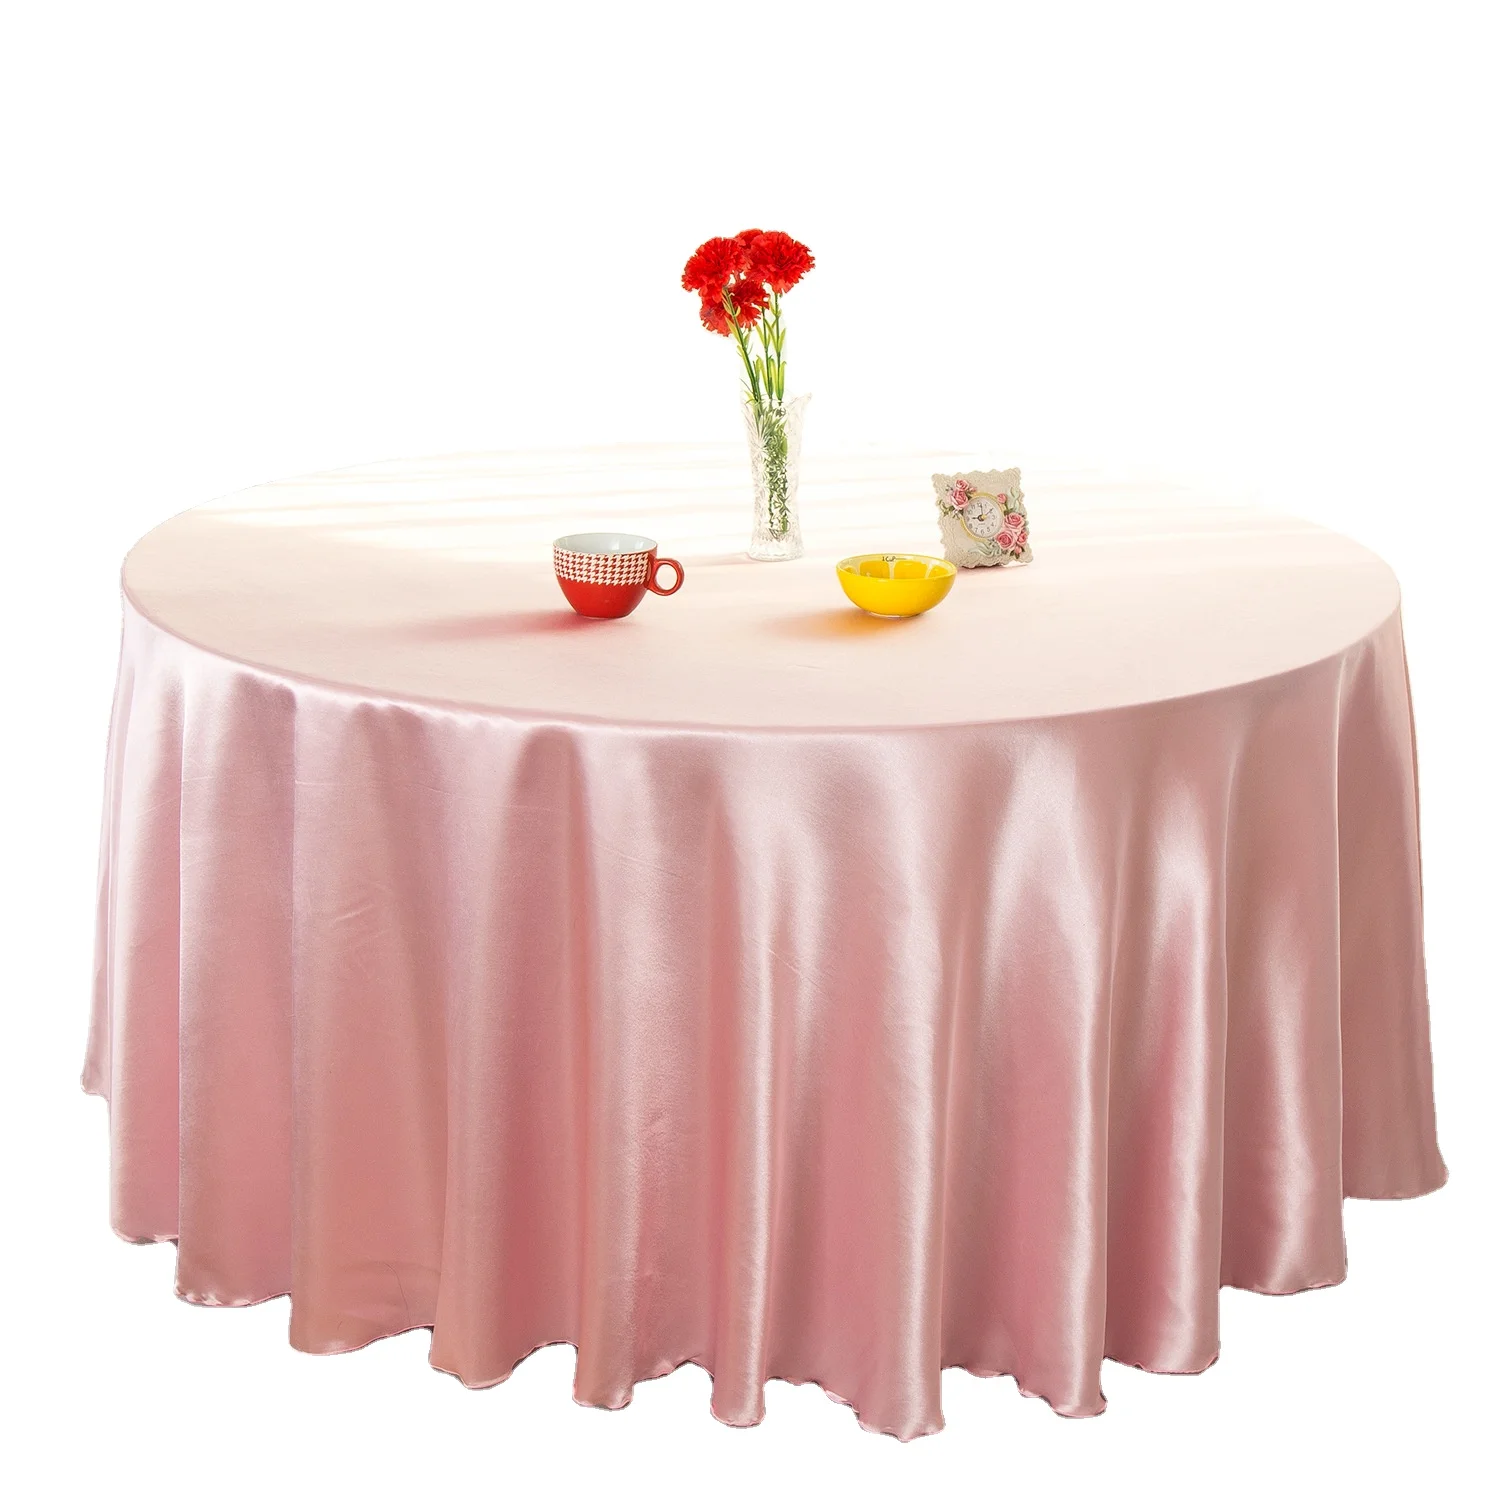 Скатерть розового цвета. Розовая скатерть. Атласная скатерть. Стол с розовой скатертью. Атласная скатерть на стол.